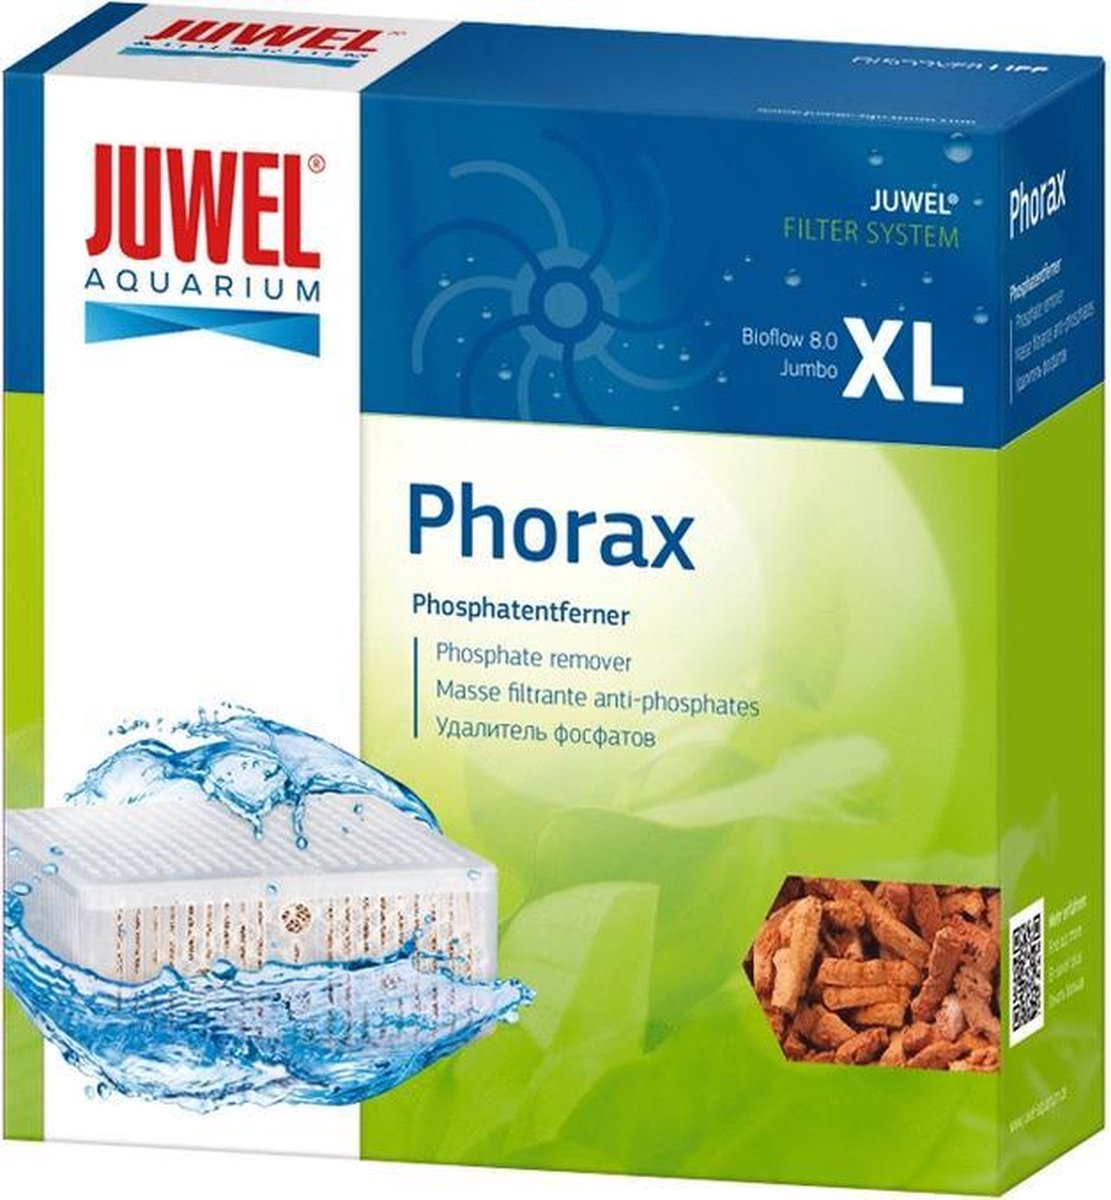 bol.com | Juwel phorax voor jumbo en bioflow 8.0